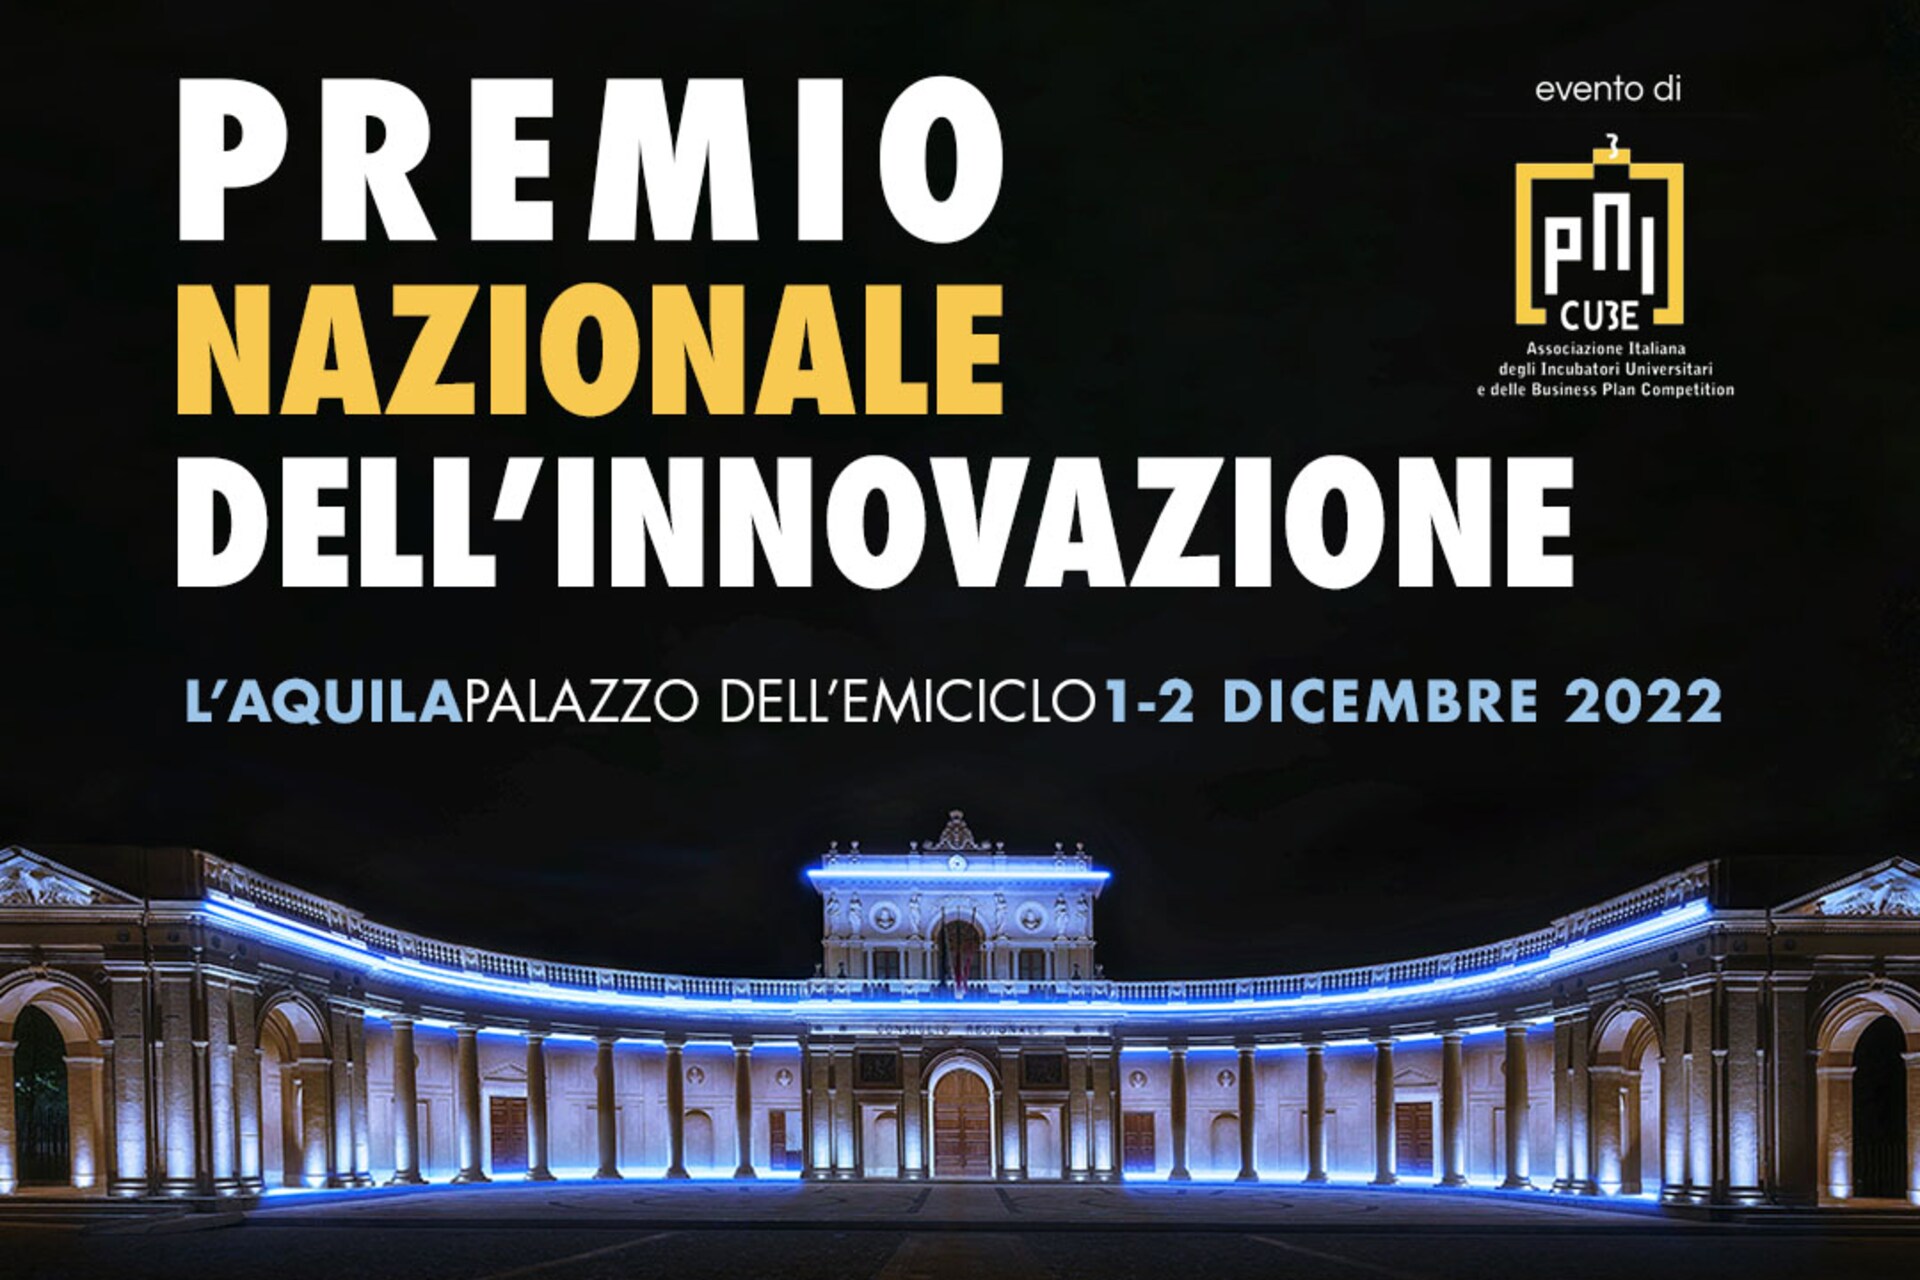 Nemzeti Innovációs Díj: Az olaszországi "Nemzeti Innovációs Díj" 2022-es kiadásának kulcsfontosságú látványvilága